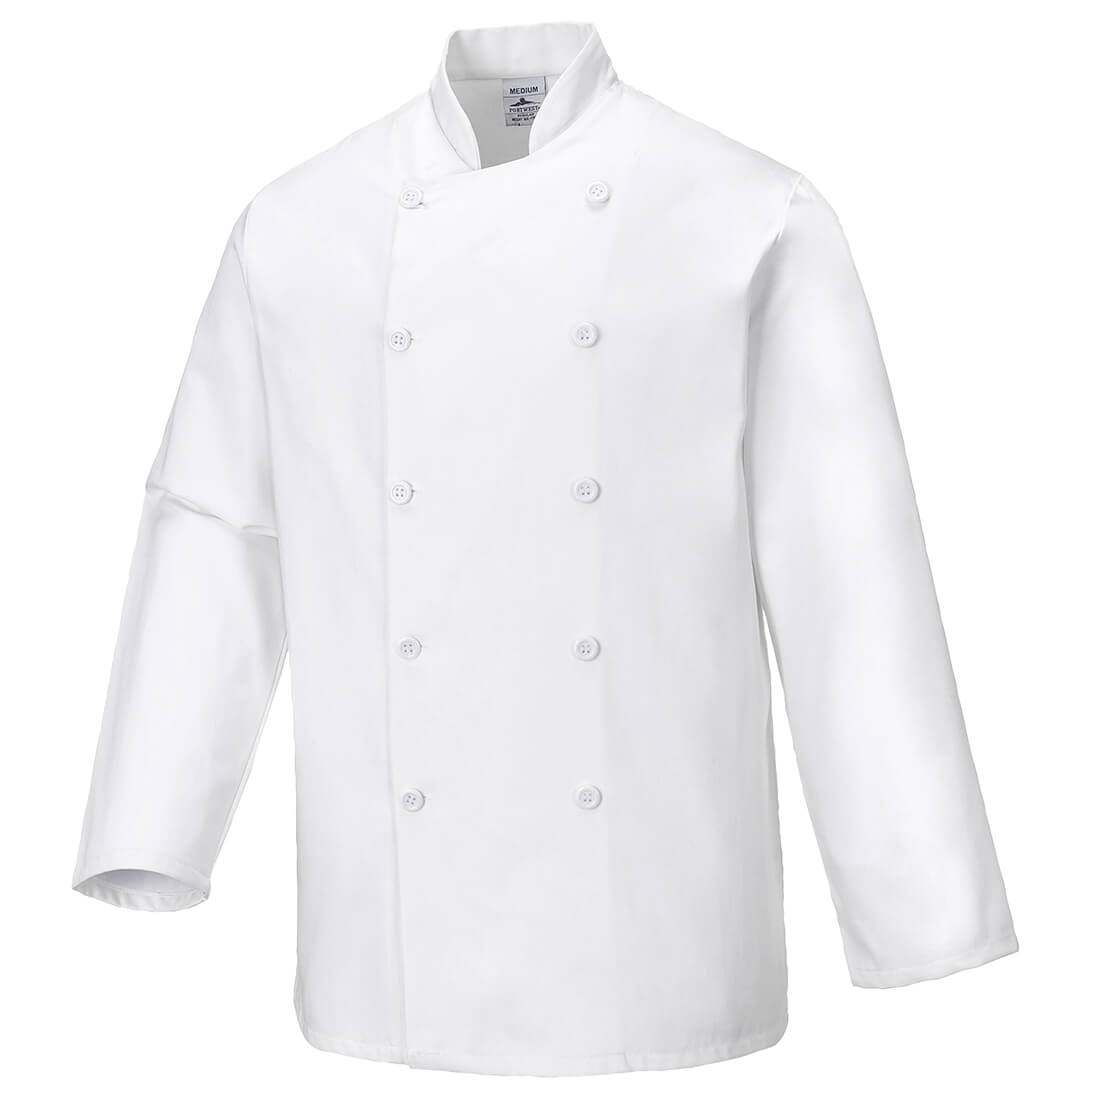 Sussex Chefs Jacket - Safetywear